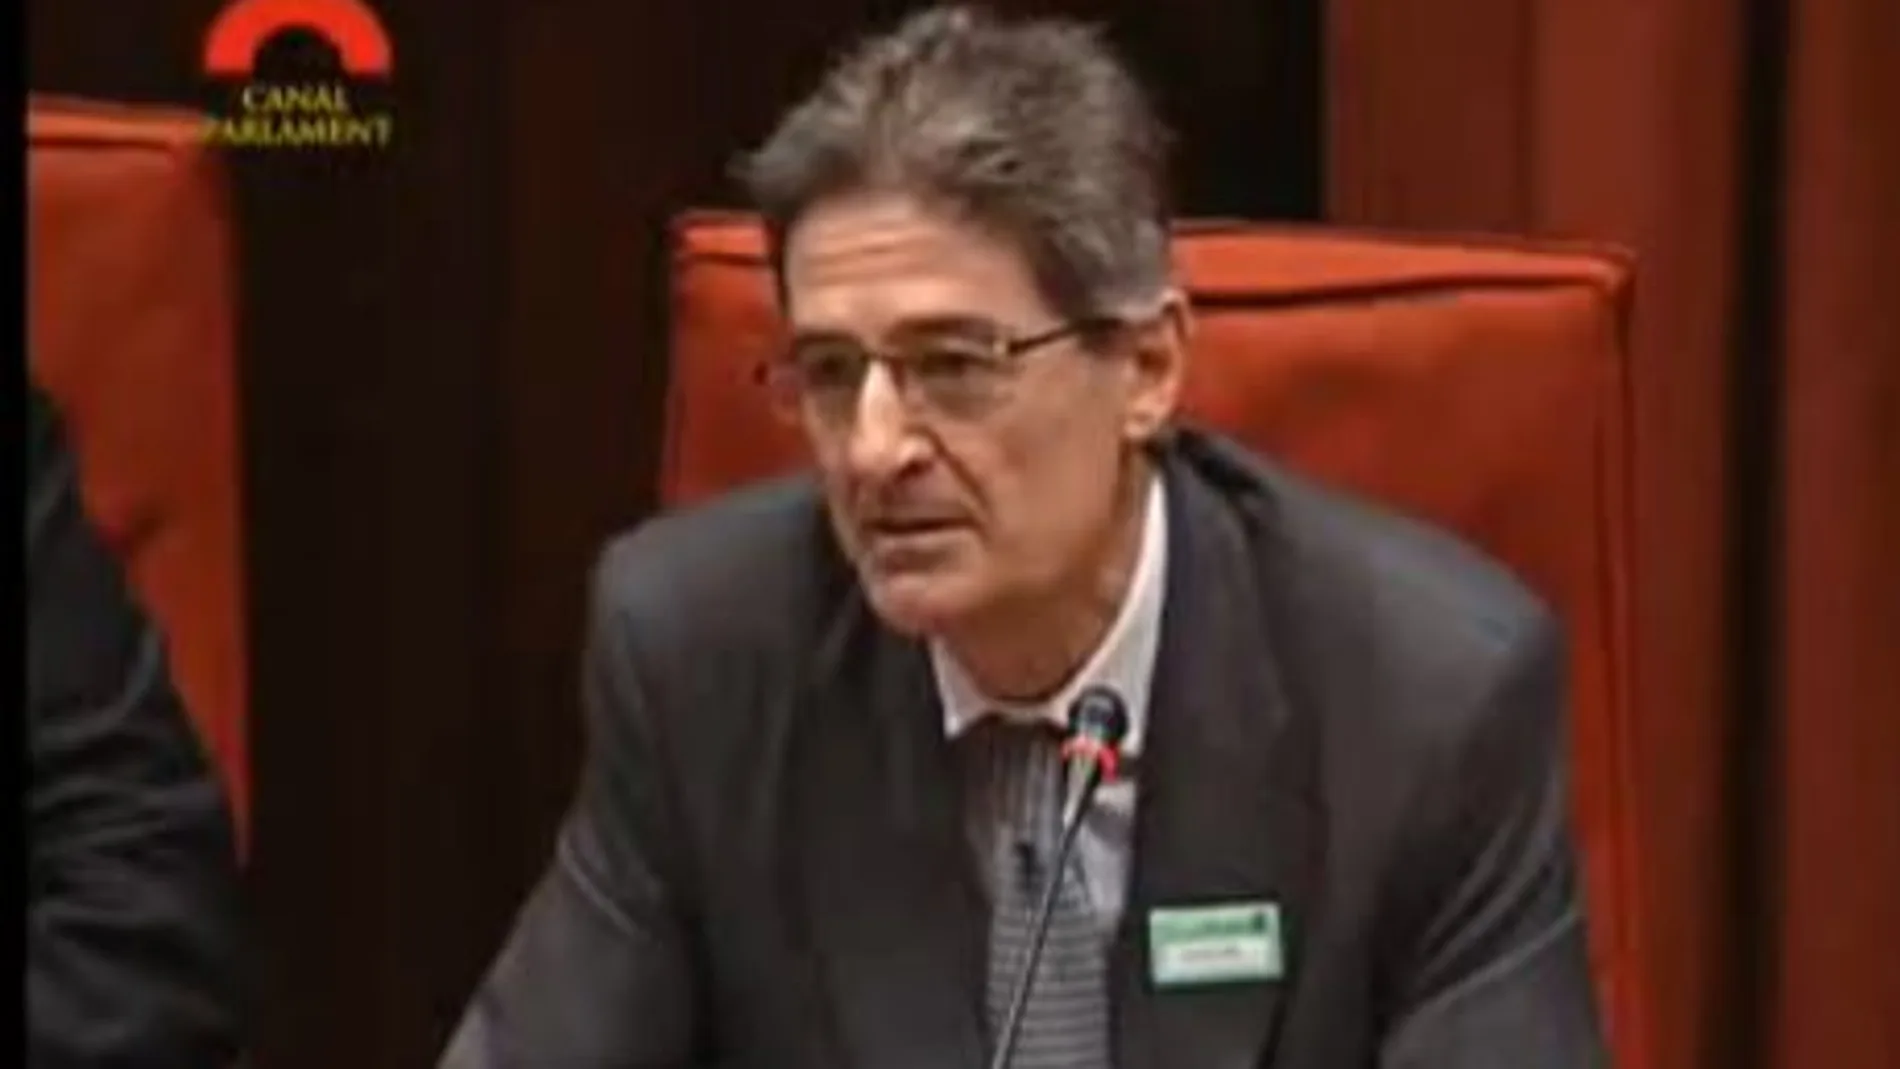 El ex directivo de Ferrovial Pedro Buenaventura durante su comparecencia en el Parlamento catalán